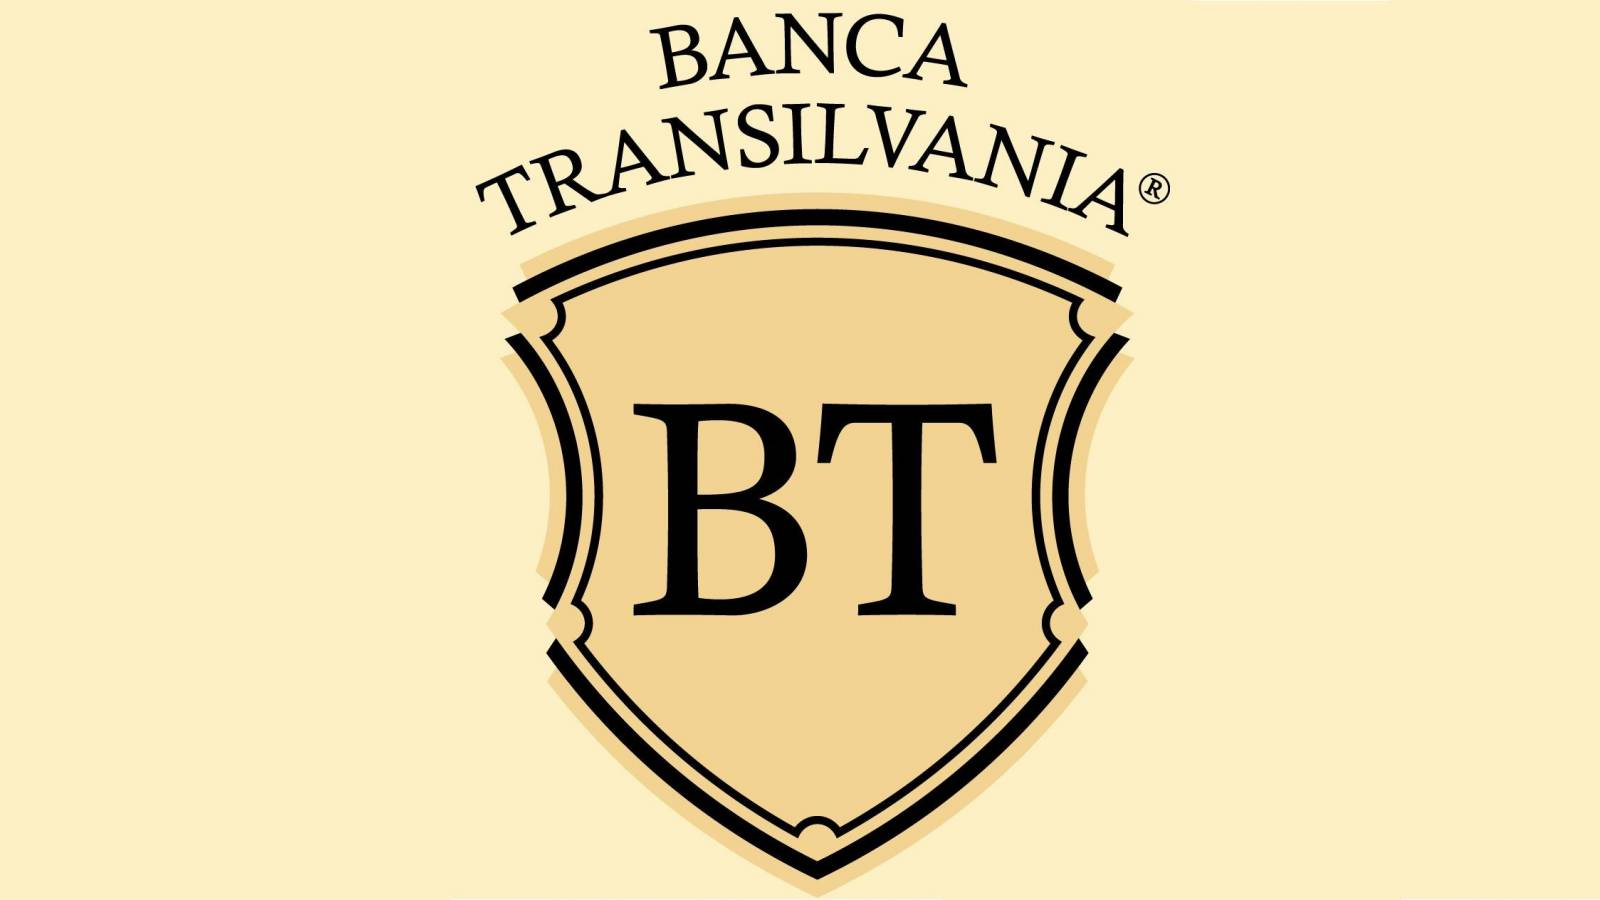 BANCA Transilvania digitaal